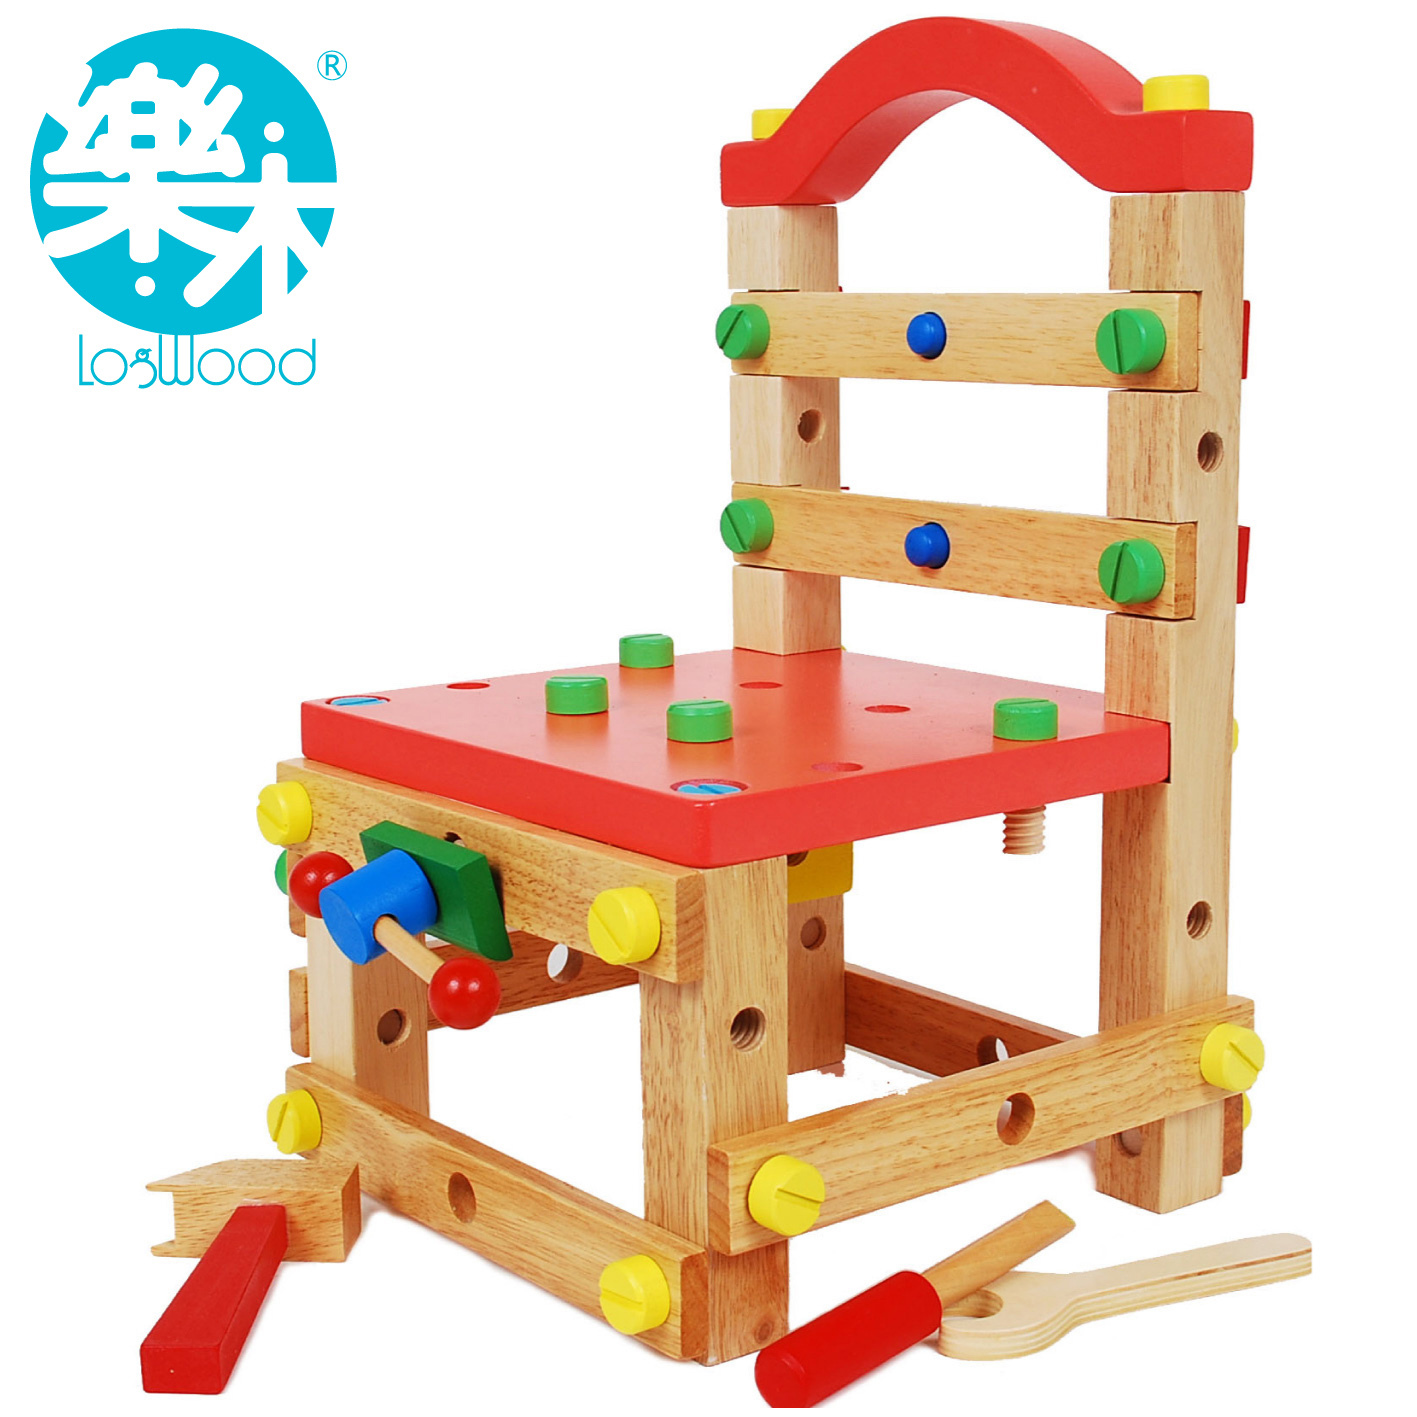 螺母拆装组合玩具鲁班椅 木制儿童益智玩具3-7岁拼搭工作拆装椅